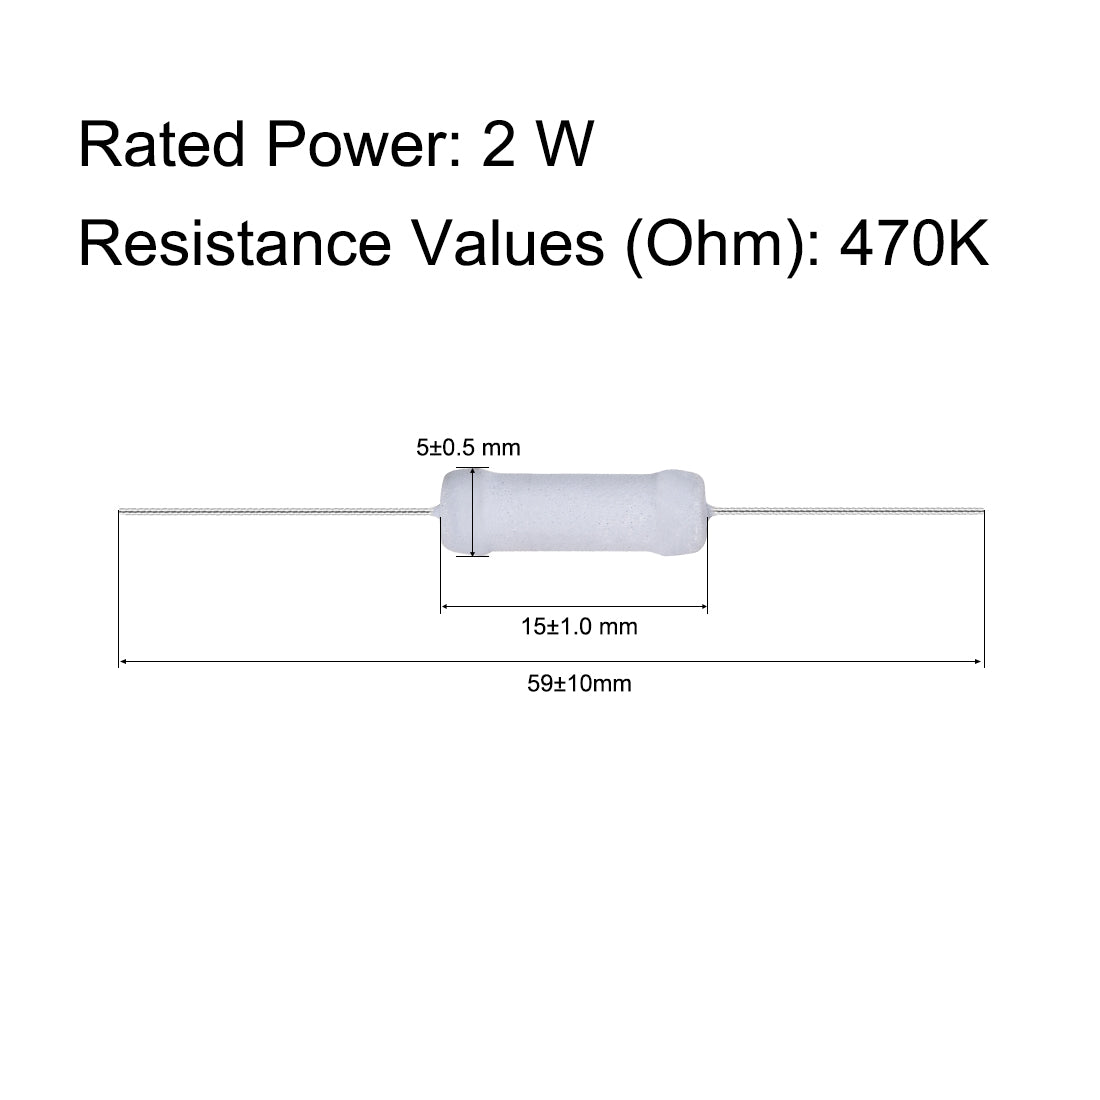 uxcell Uxcell 30pcs 2W 2 Watt Metal Oxide Film Resistor Axile Lead 470K Ohm ±5% Tolerance